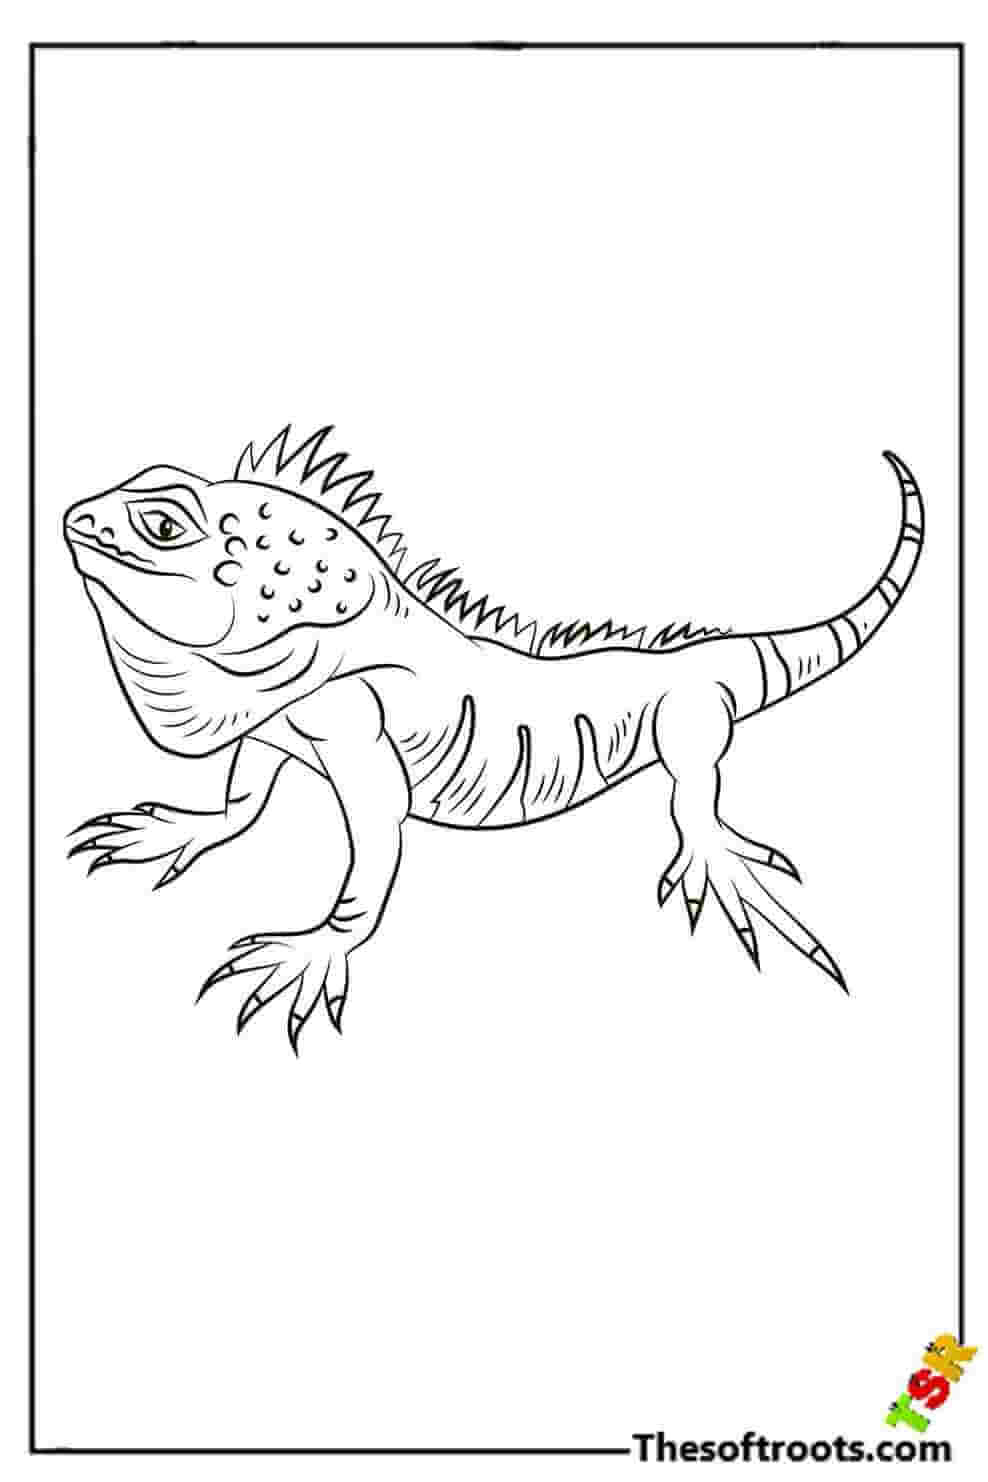 Dangerous lizard coloring pages